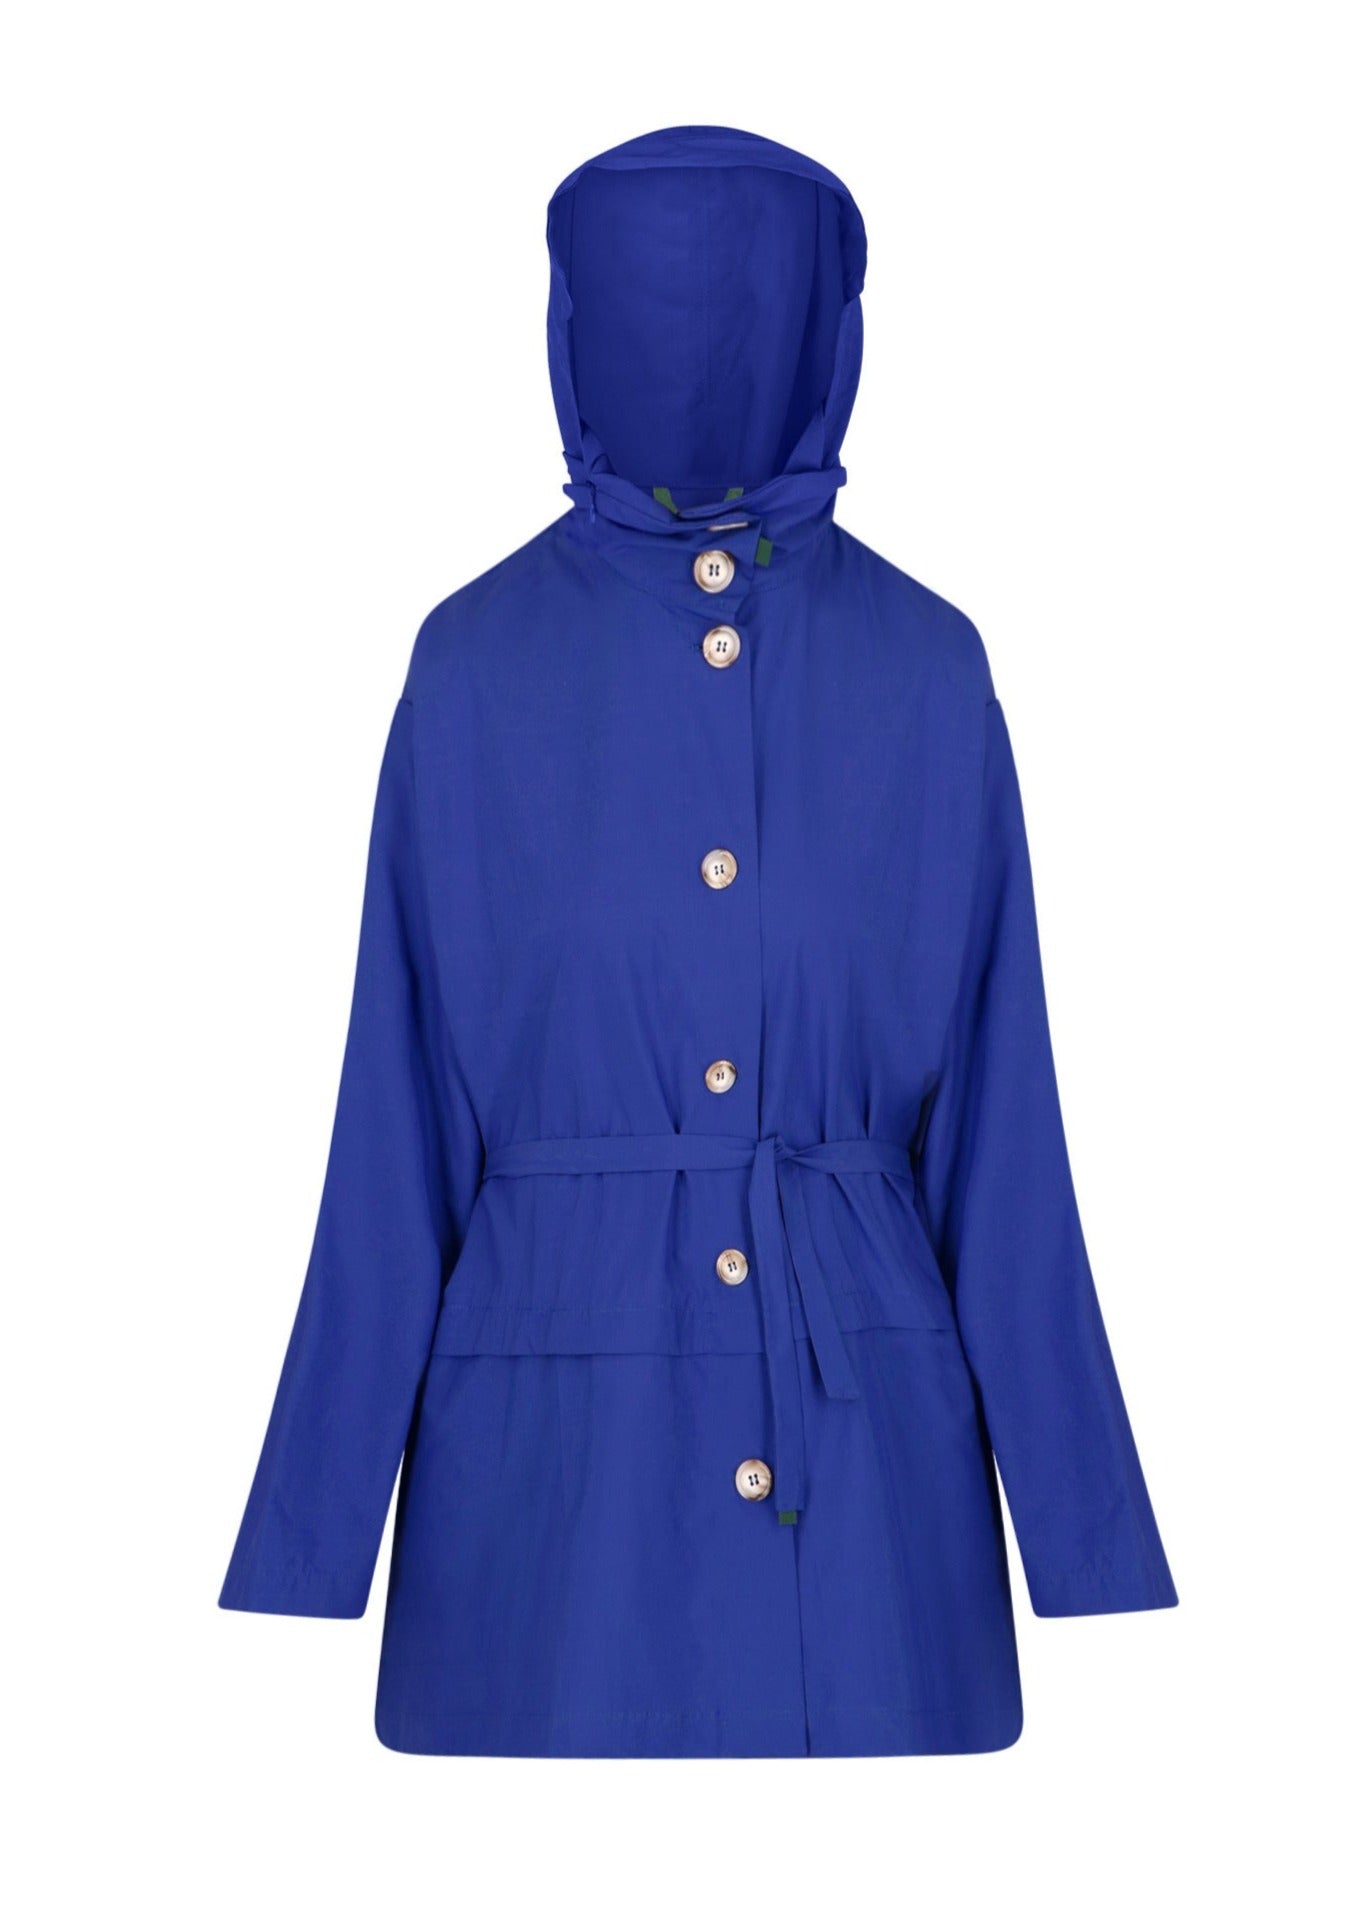 Bise raincoat - Royal Blue color - front view